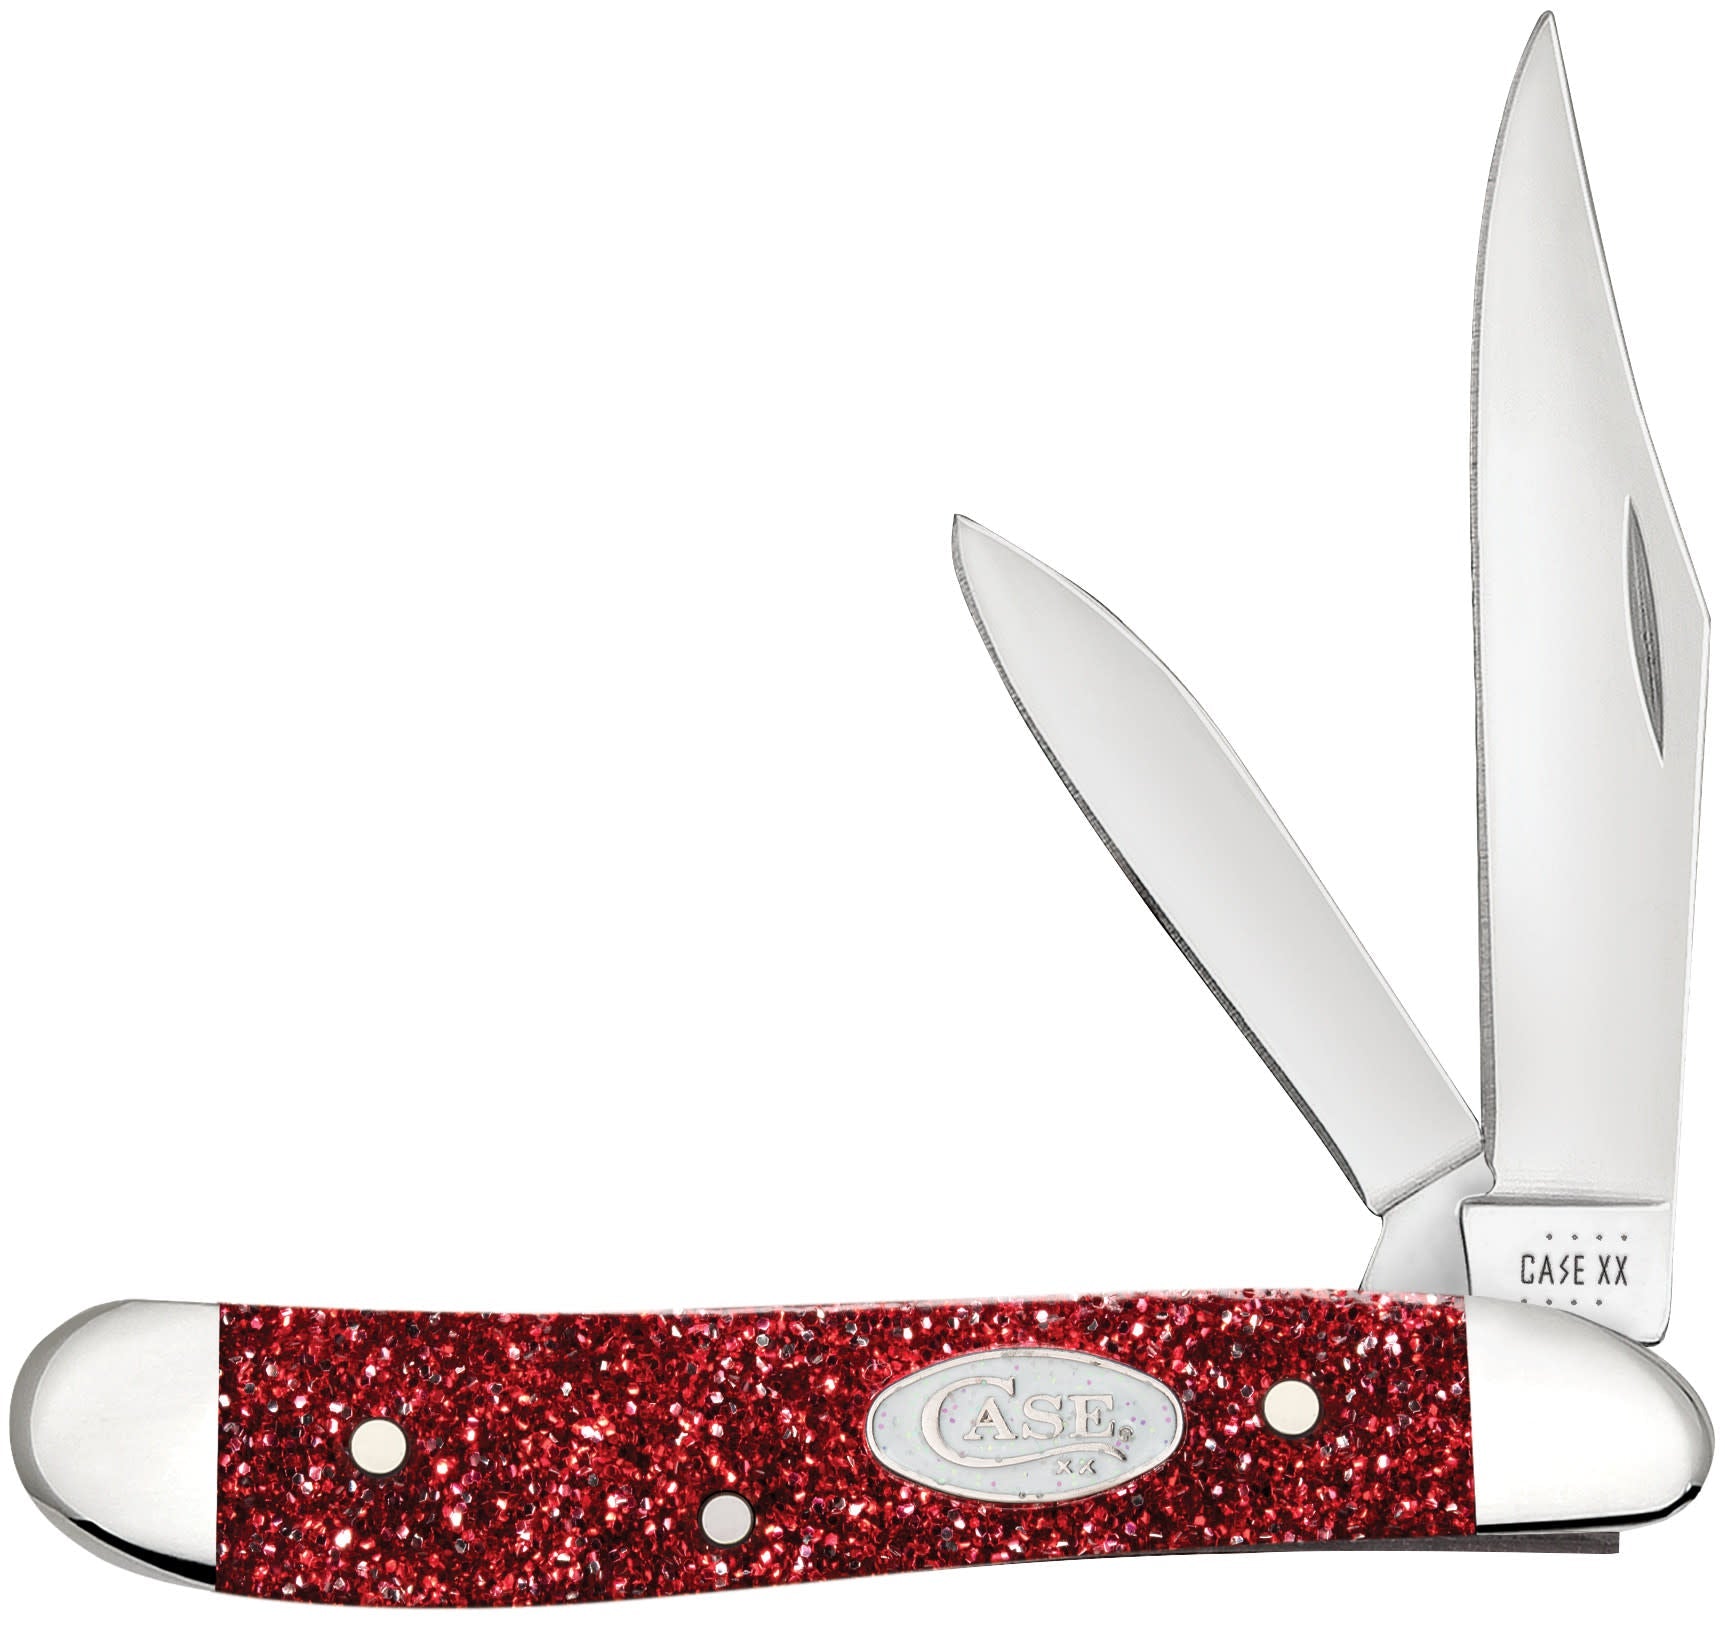 Ruby Stardust Kirinite® Peanut Knife Front View